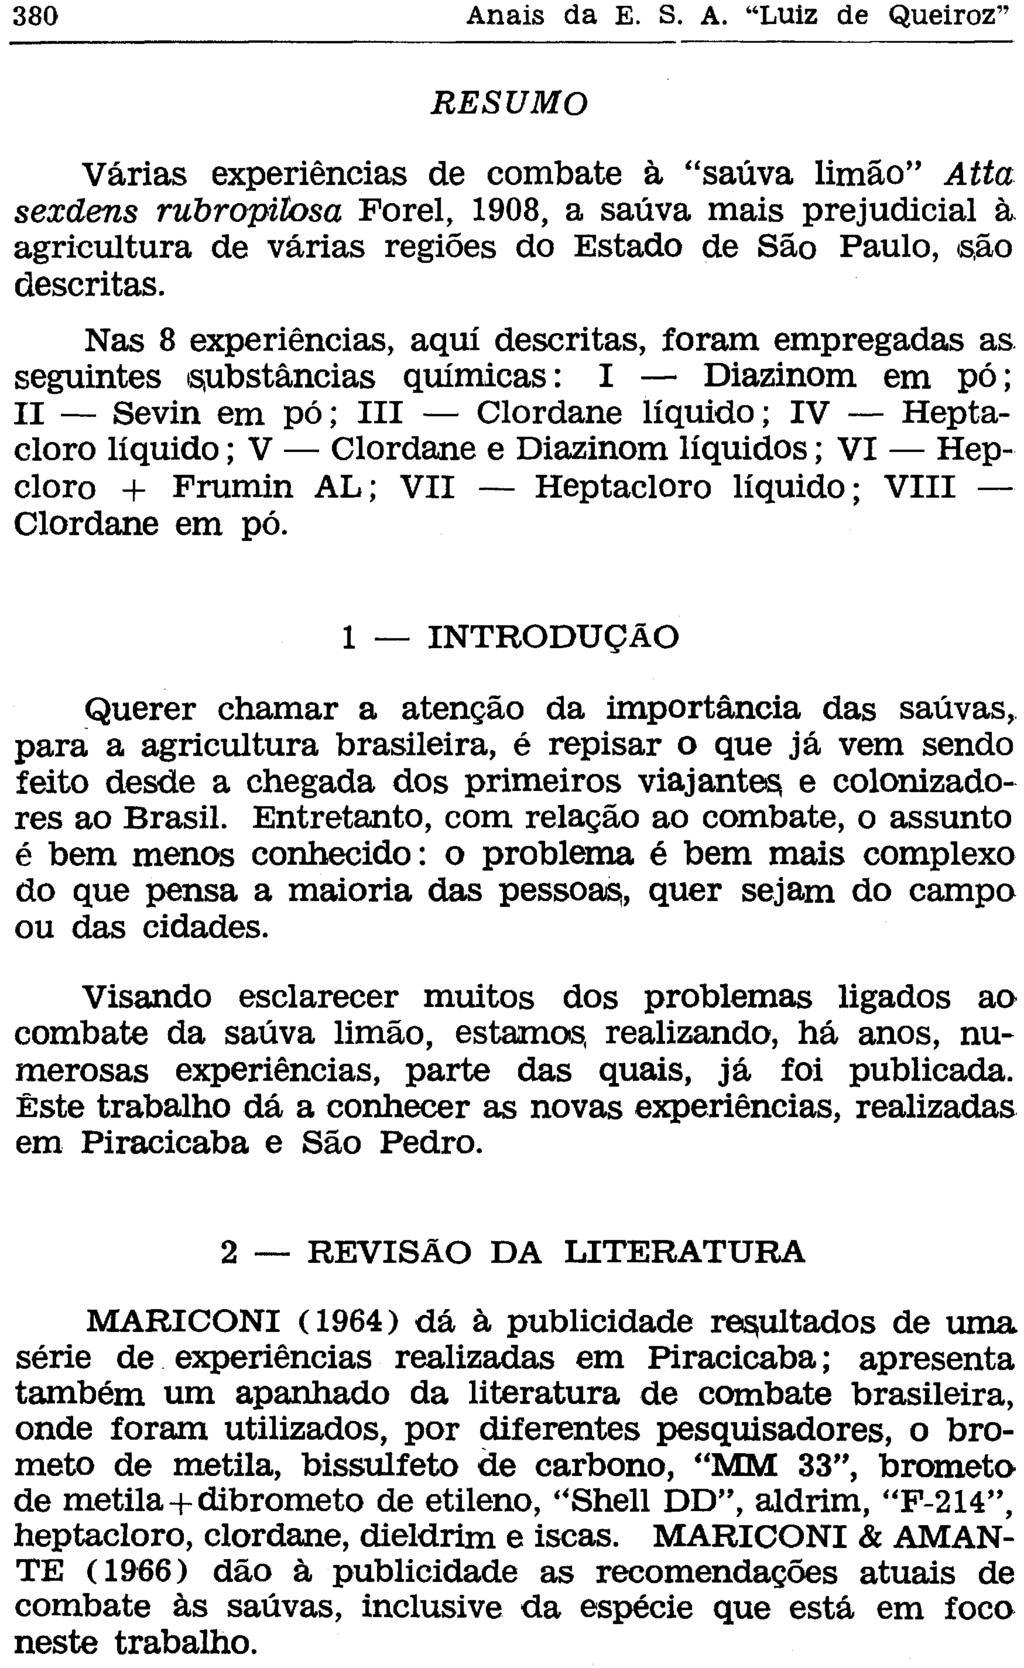 RESUMO Várias experiências de combate à "saúva limão" Atta sexdens rubropitosa Forel, 1908, a saúva mais prejudicial à agricultura de várias regiões do Estado de São Paulo, são descritas.